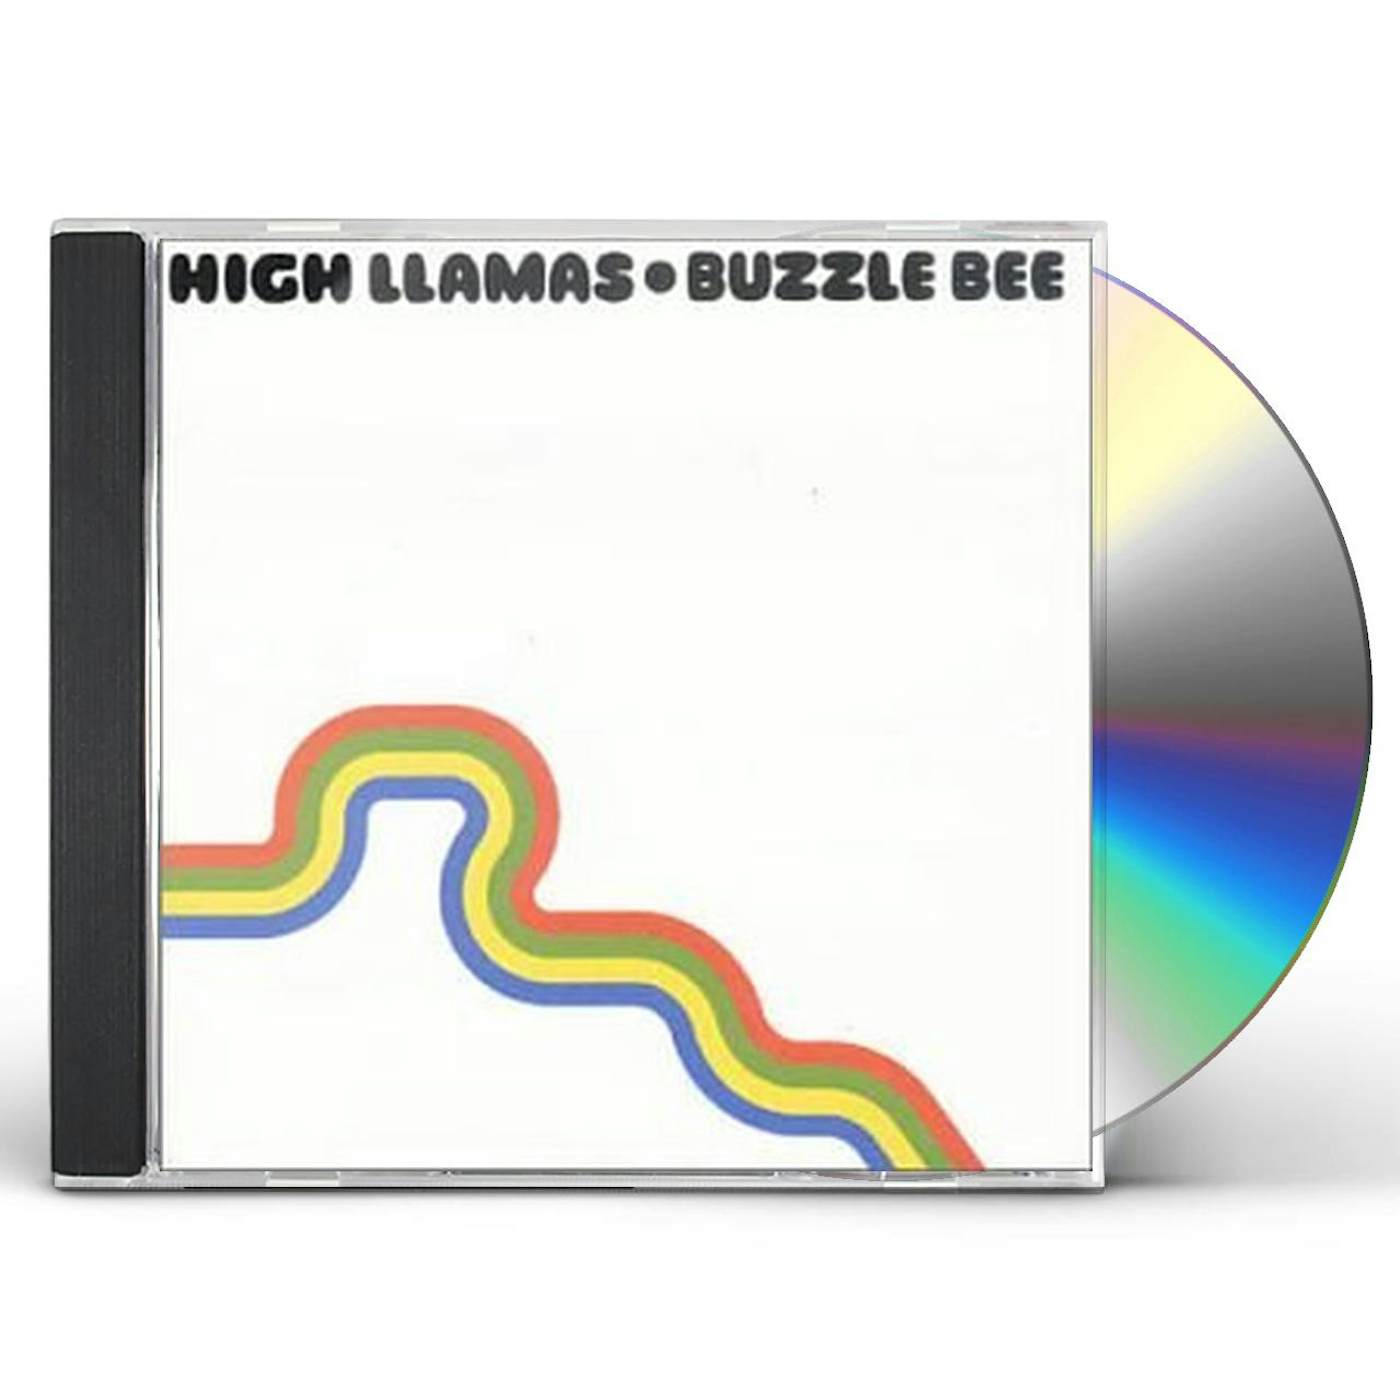 High Llamas BUZZULE BEE CD